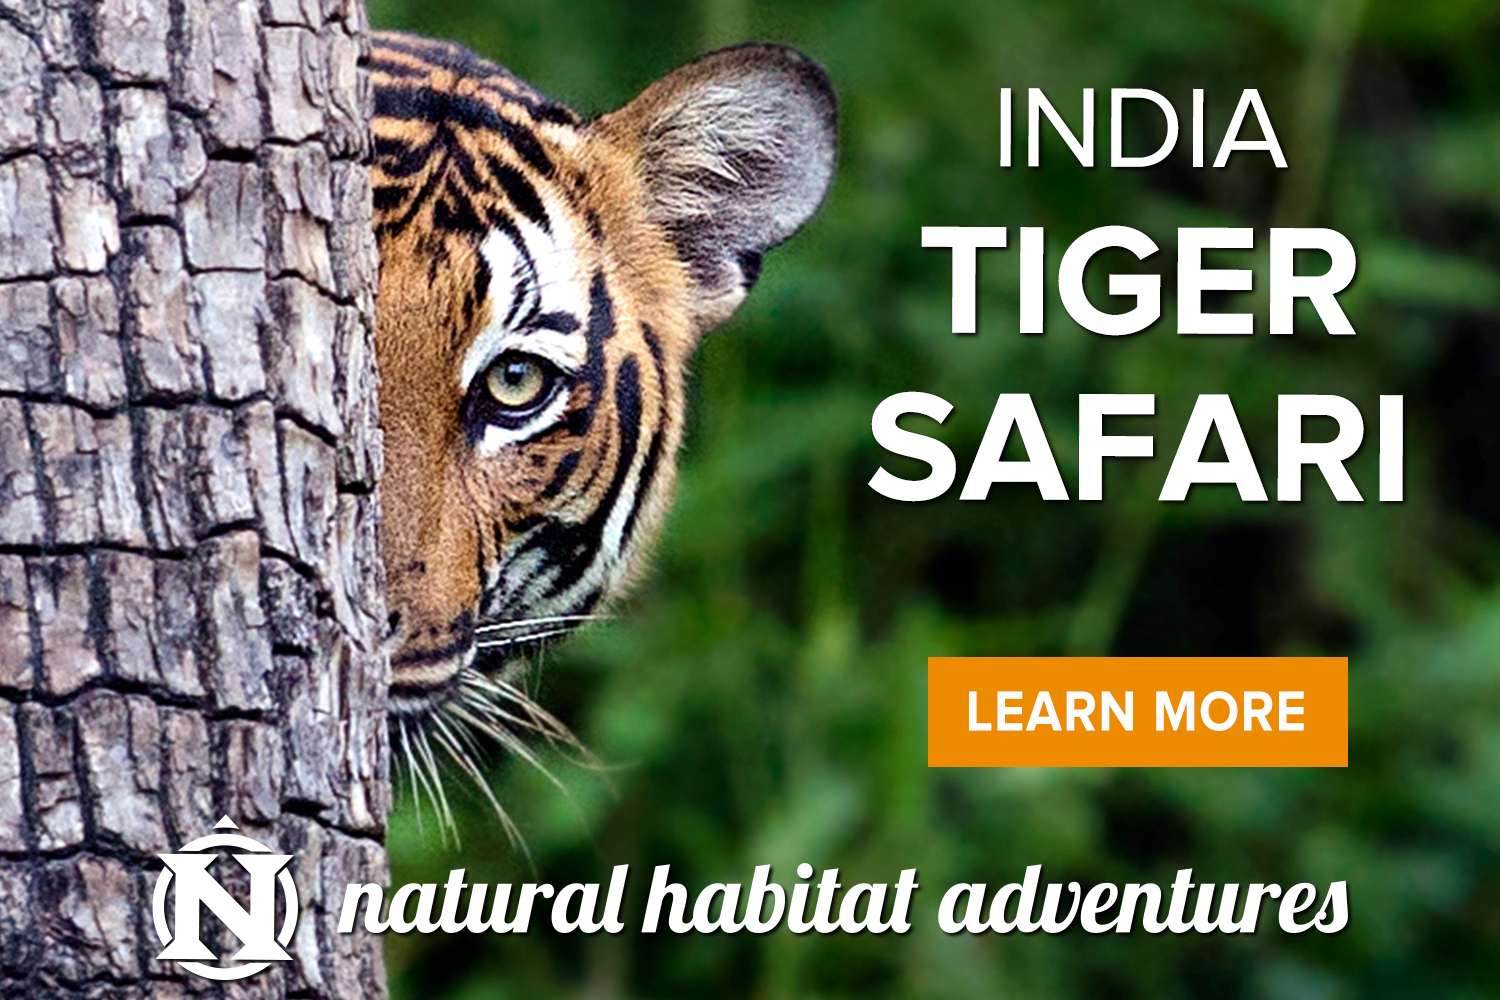 Grand India wildlife safari